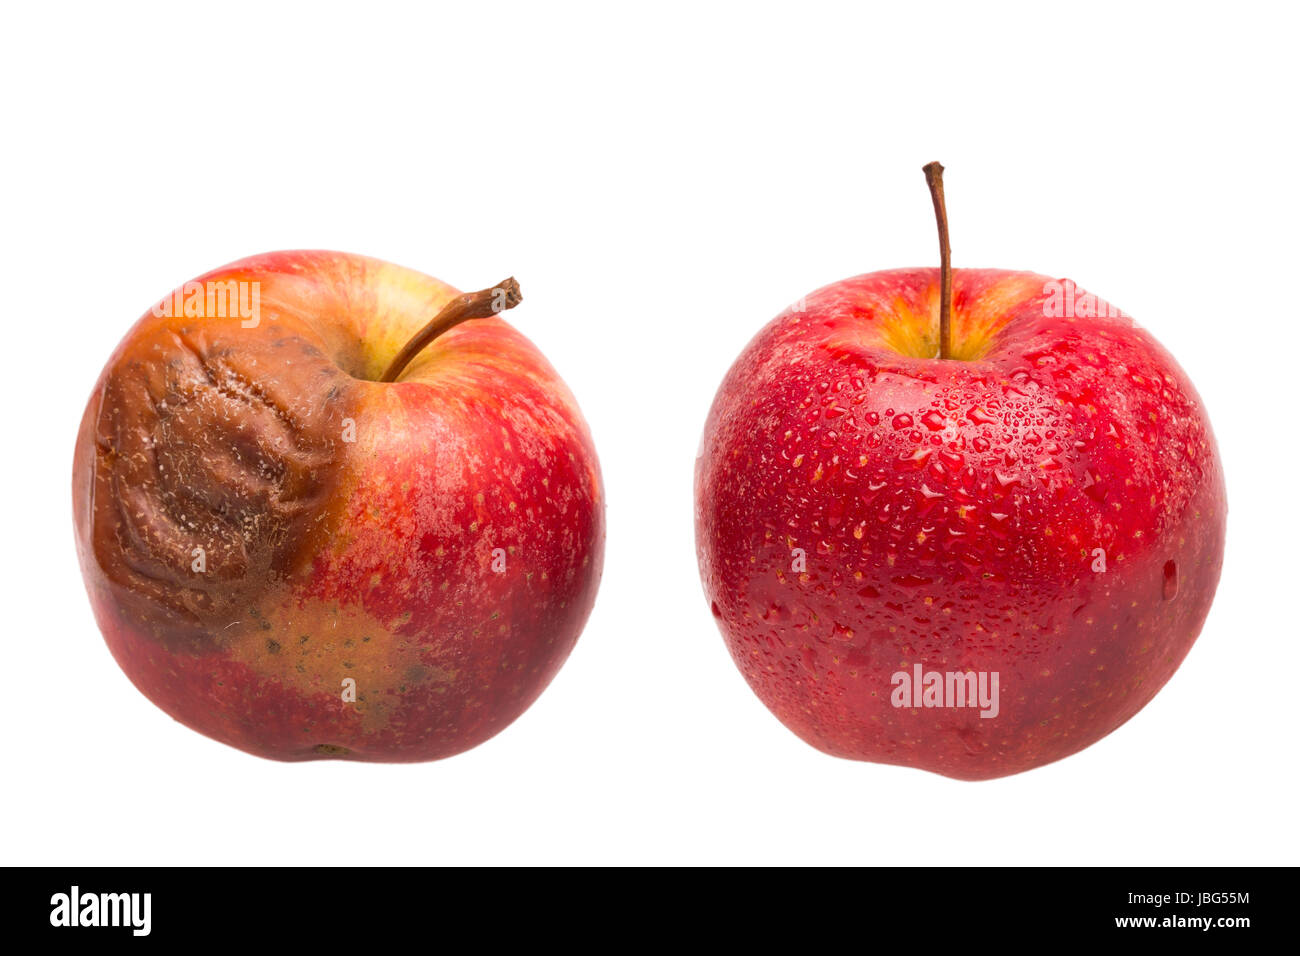 Frischer und verfaulter Apfel als Vergleich Stock Photo